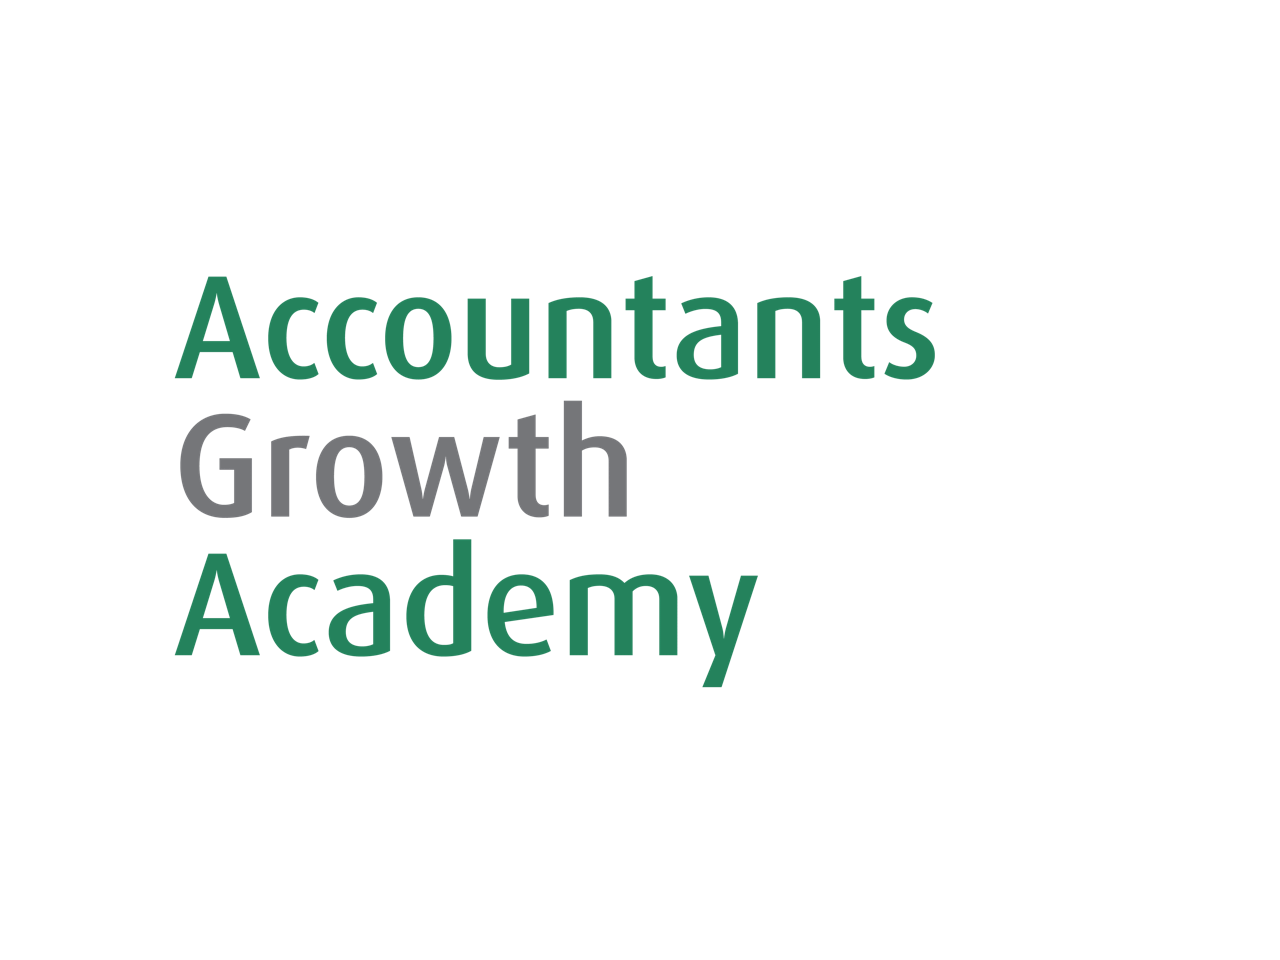 Accountants Growth Academy 